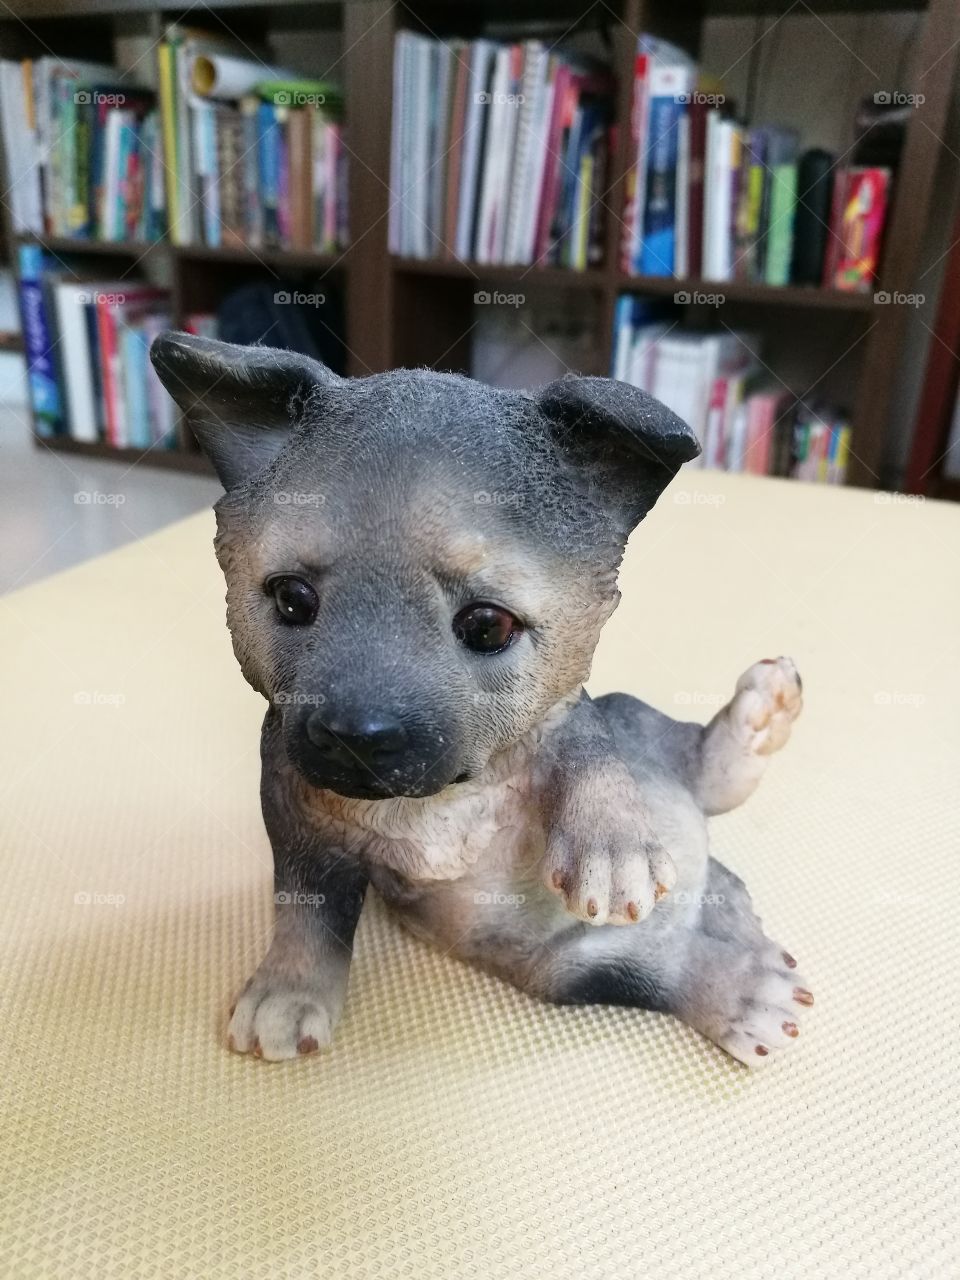 Ceramic dog with doubtfulface sitting on  sofa.